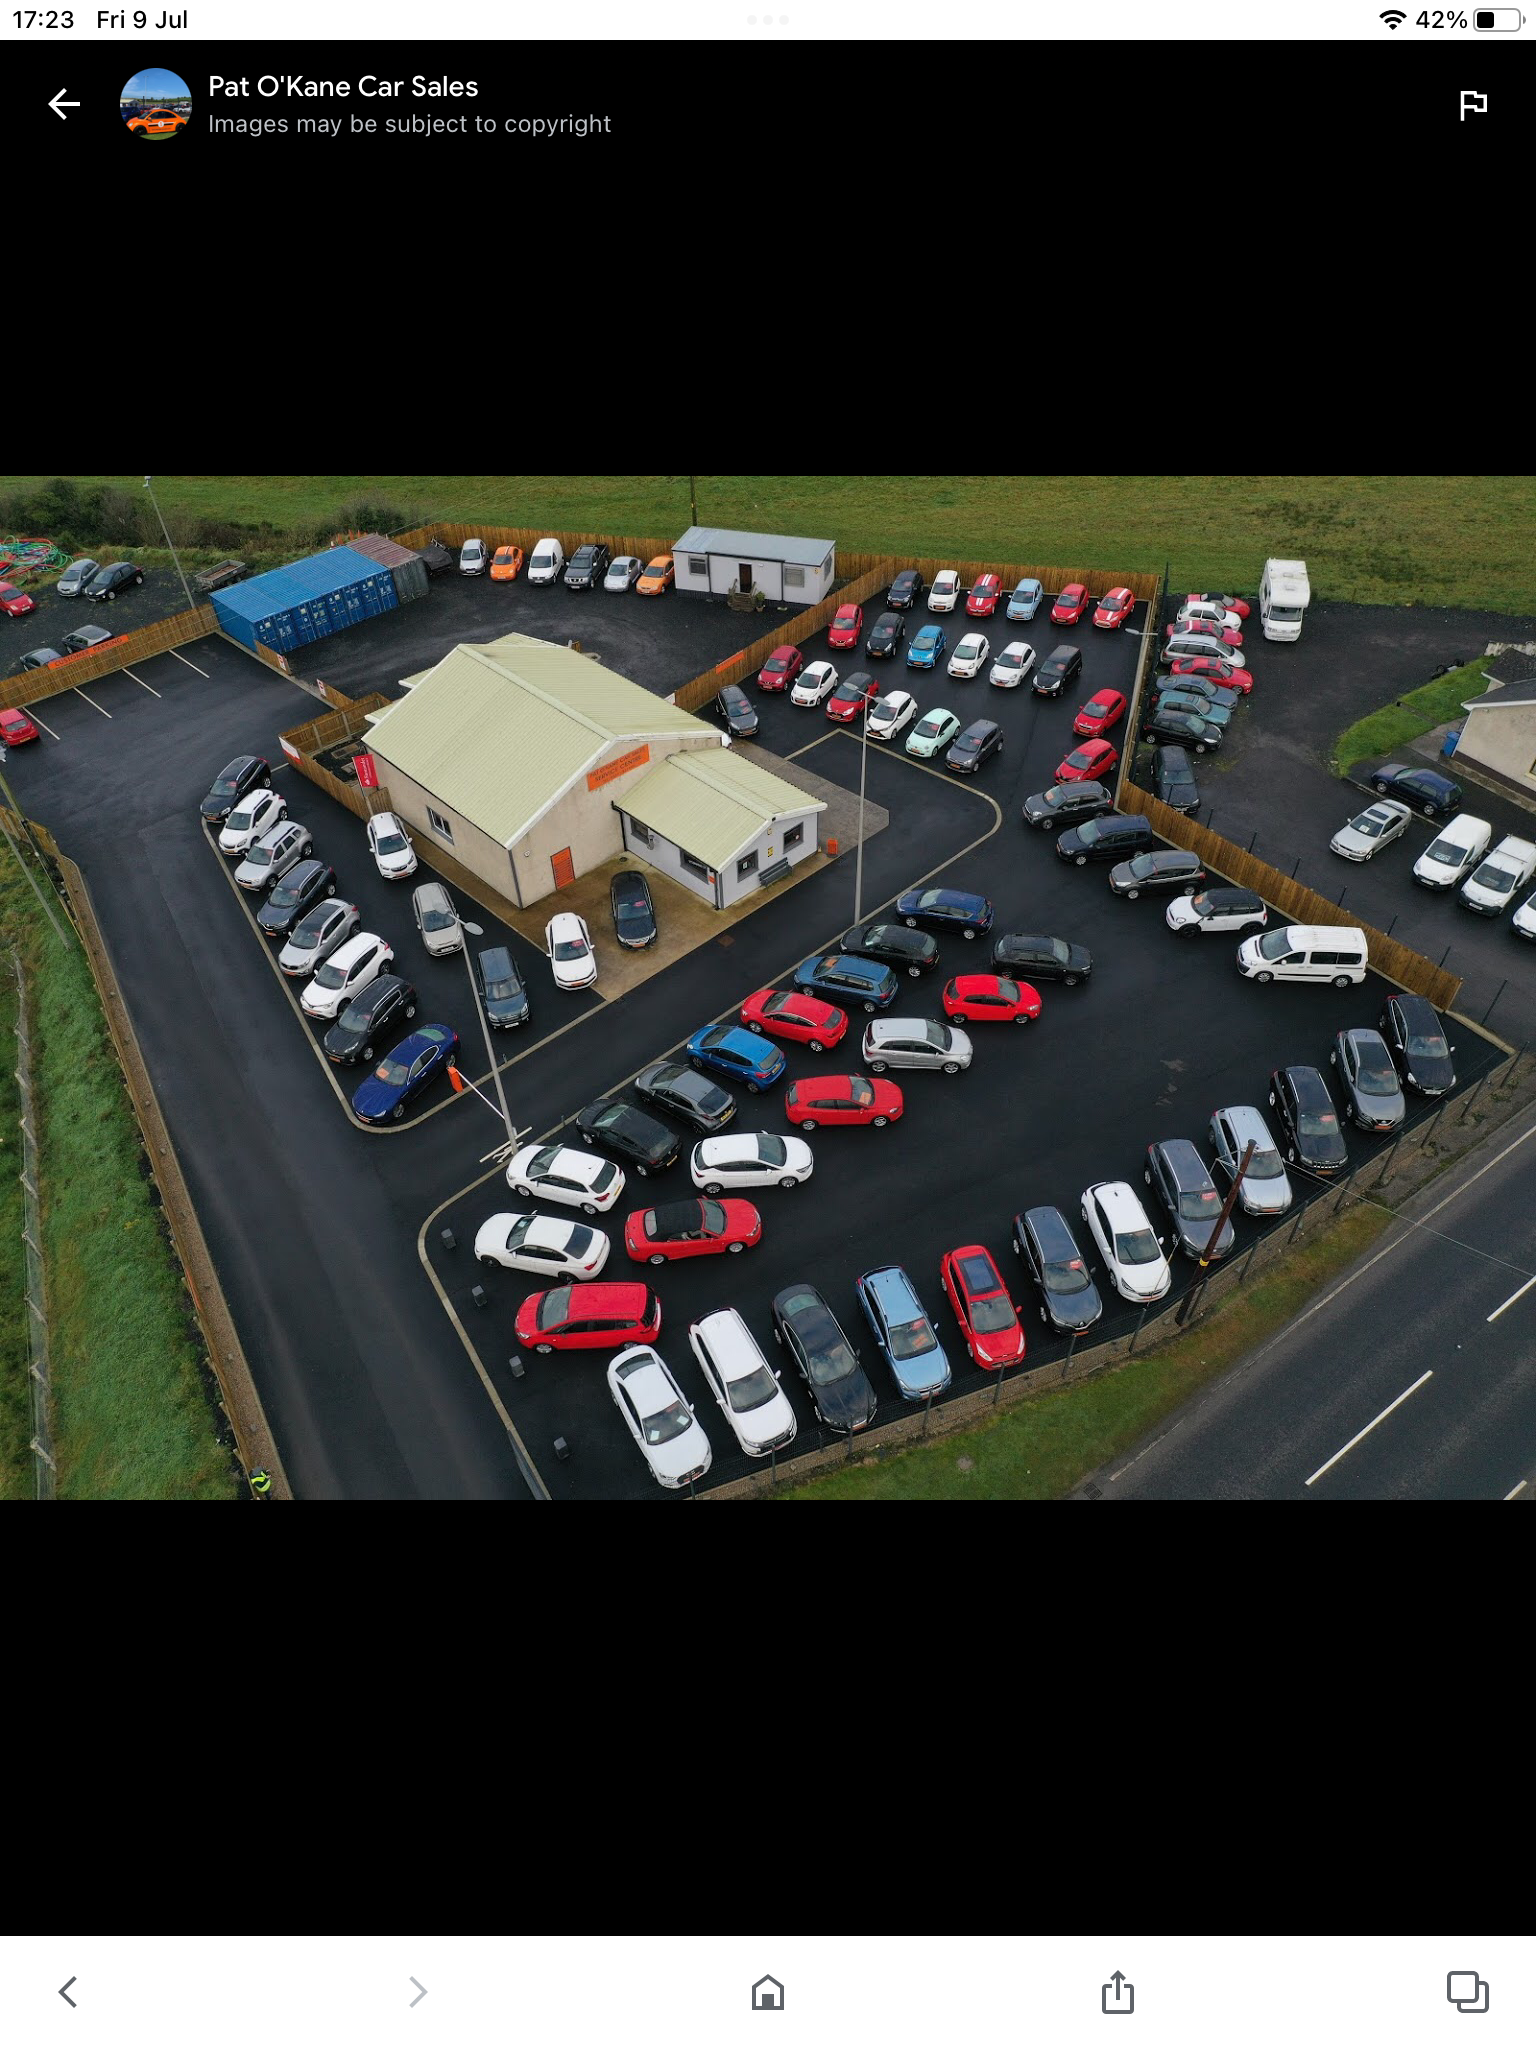 Nissan Juke DIESEL HATCHBACK in Derry / Londonderry